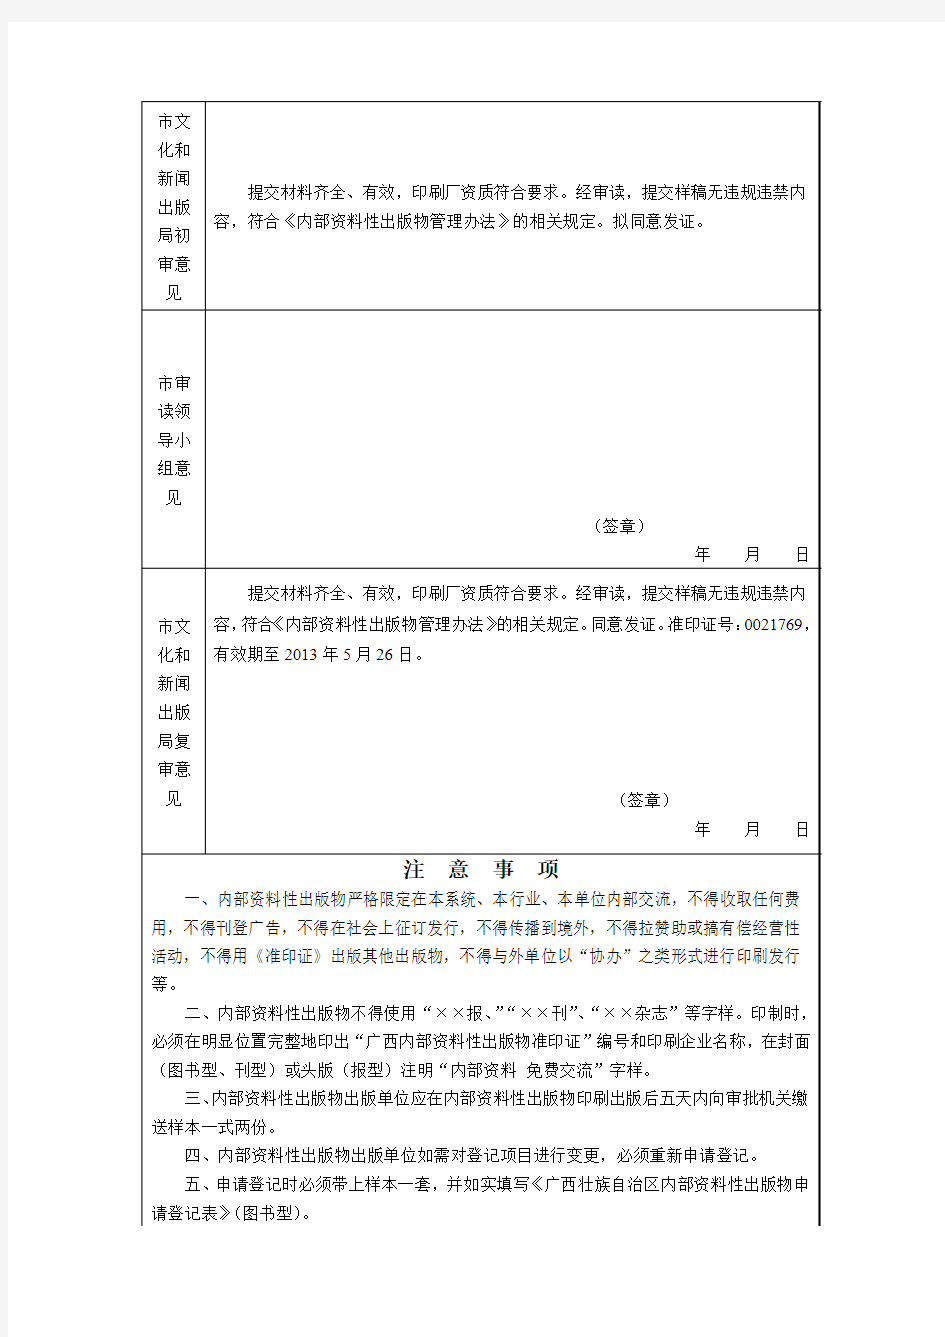 广西壮族自治区内部资料性出版物申请登记表